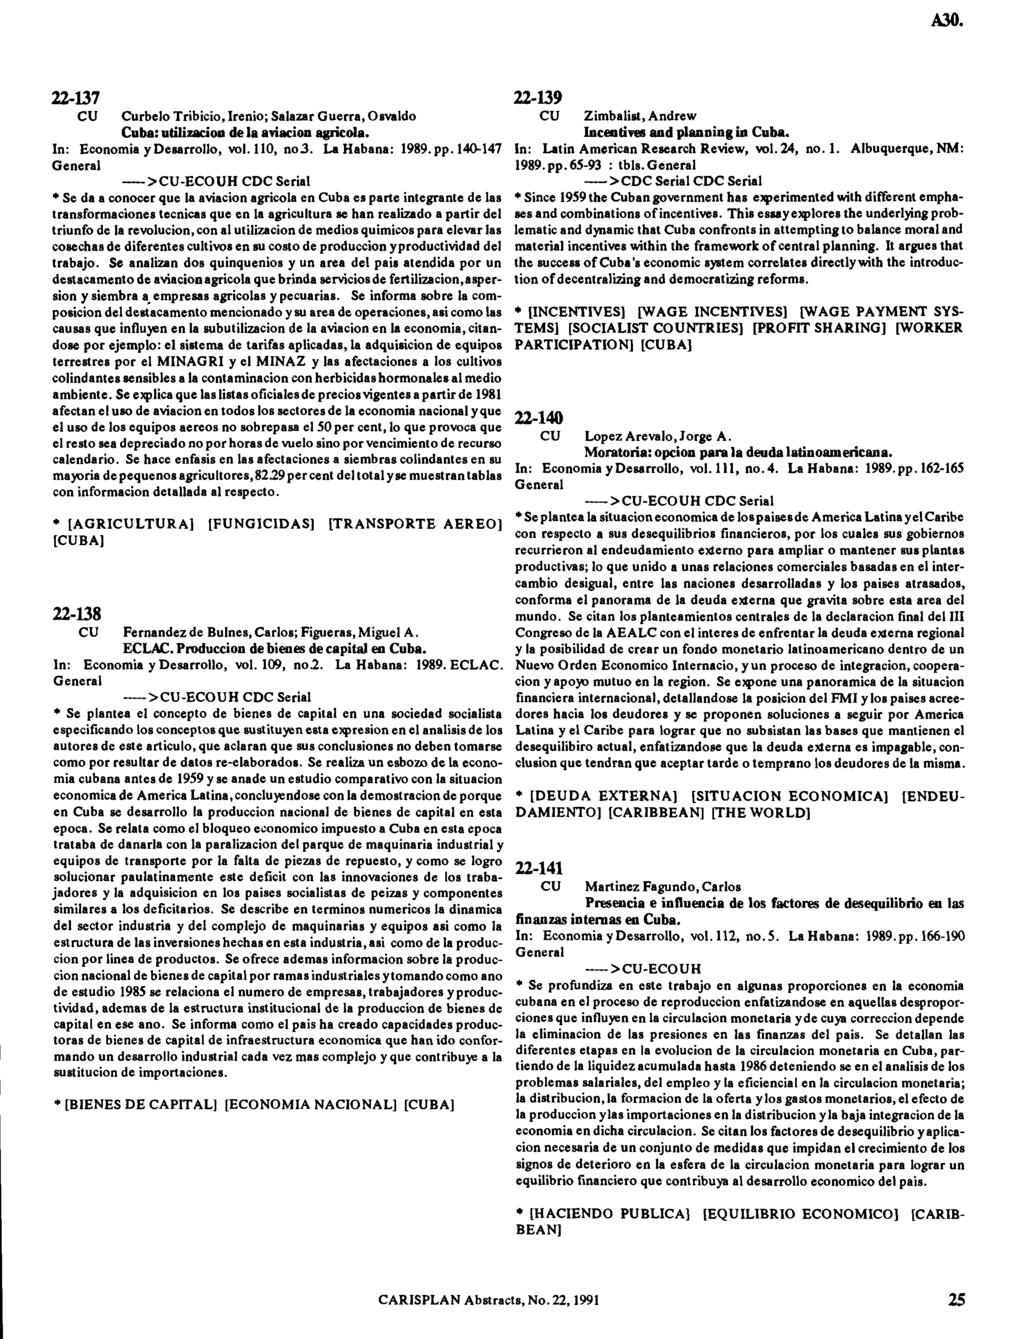 22-137 CU Curbelo T ribicio, Irenio; Salazar G uerra, Osvaldo C uba: utilización de la aviación agrícola. In: Econom ia y D esarrollo, vol. 110, n o 3. La H abana: 1989. p p.